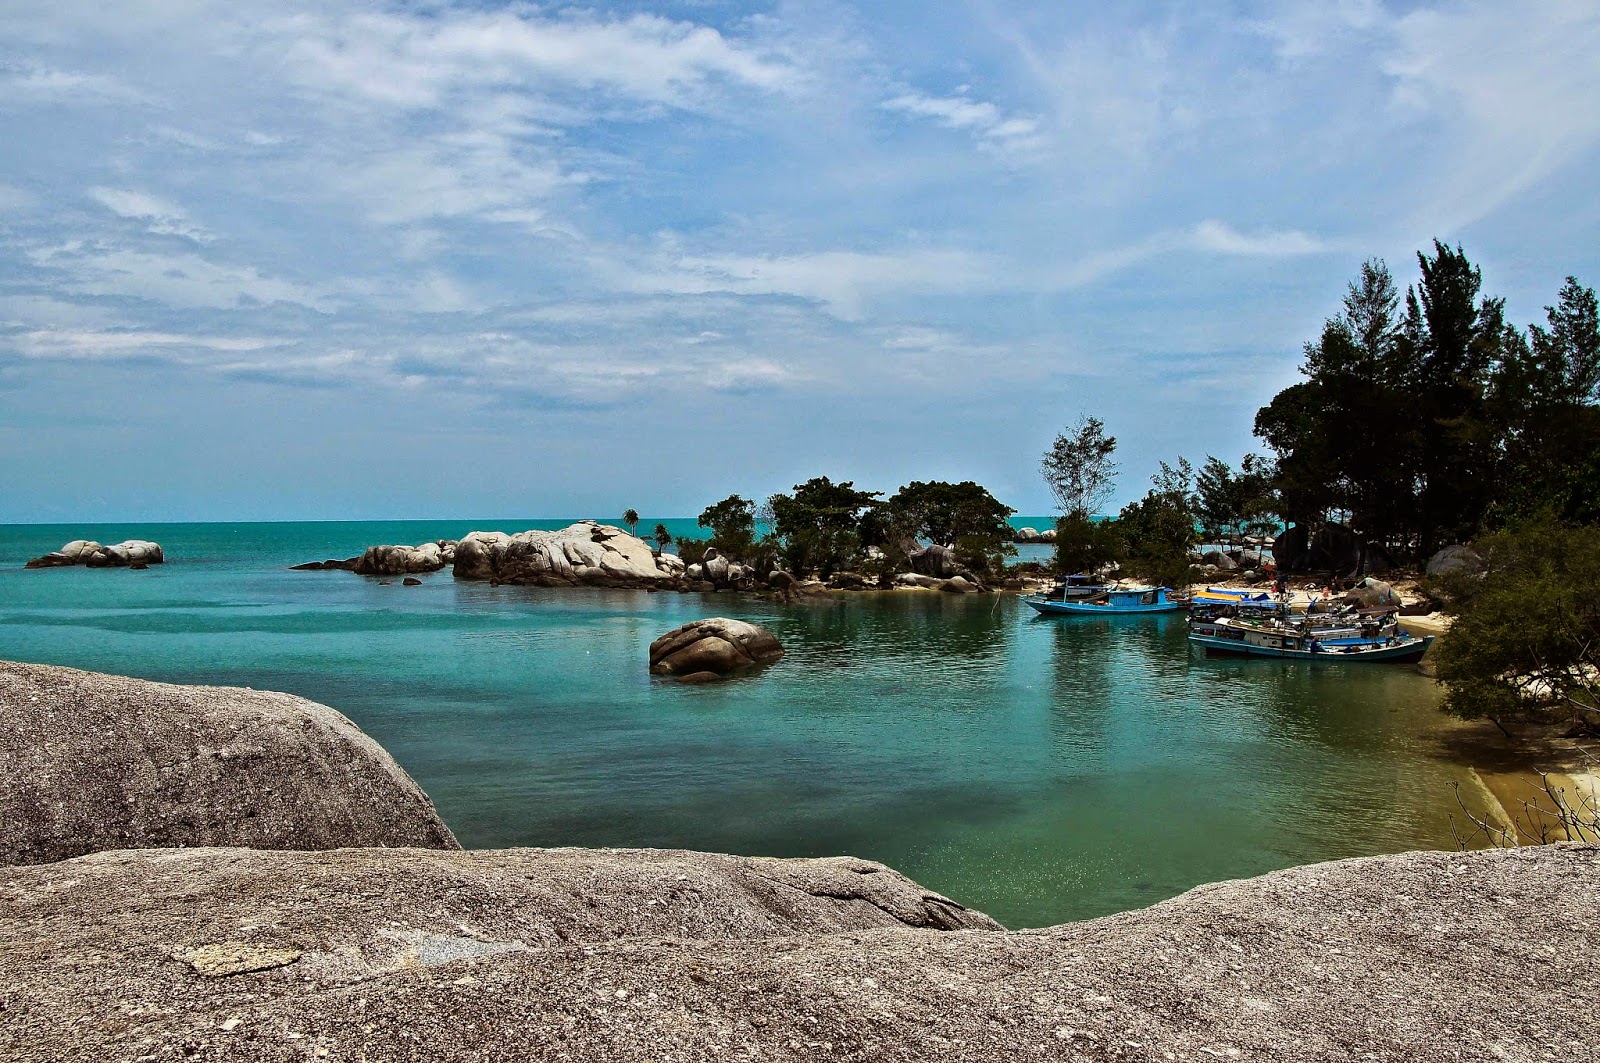  Pantai Penyabong Belitung